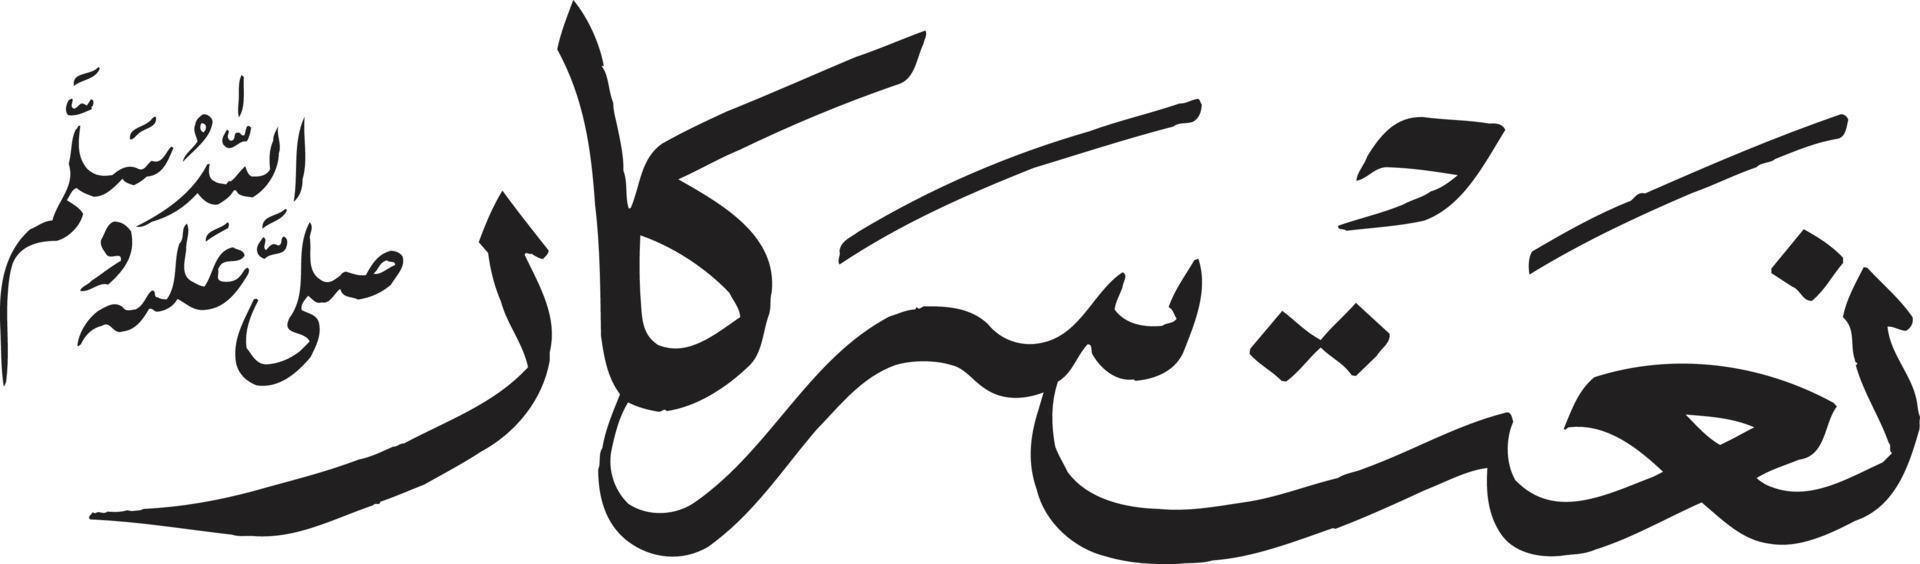 naat sirkar calligraphie arabe islamique vecteur gratuit